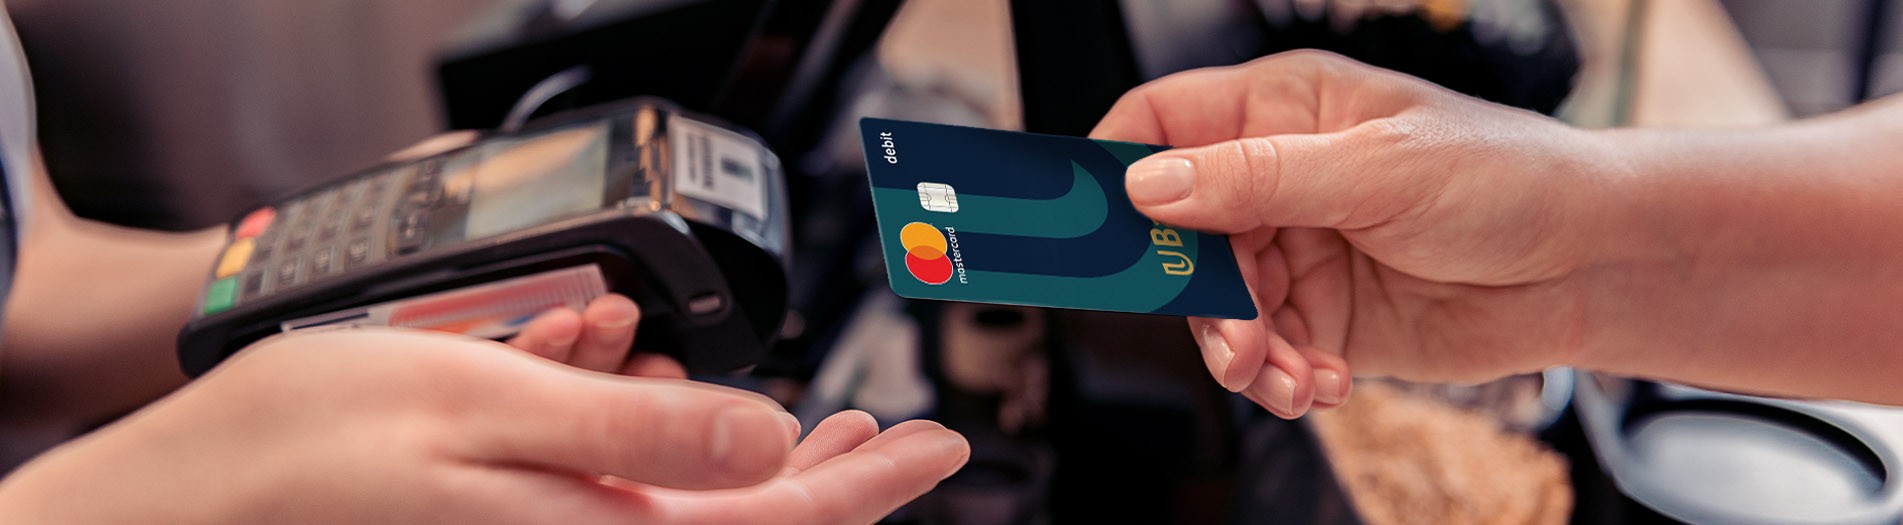 UBank debit card at register